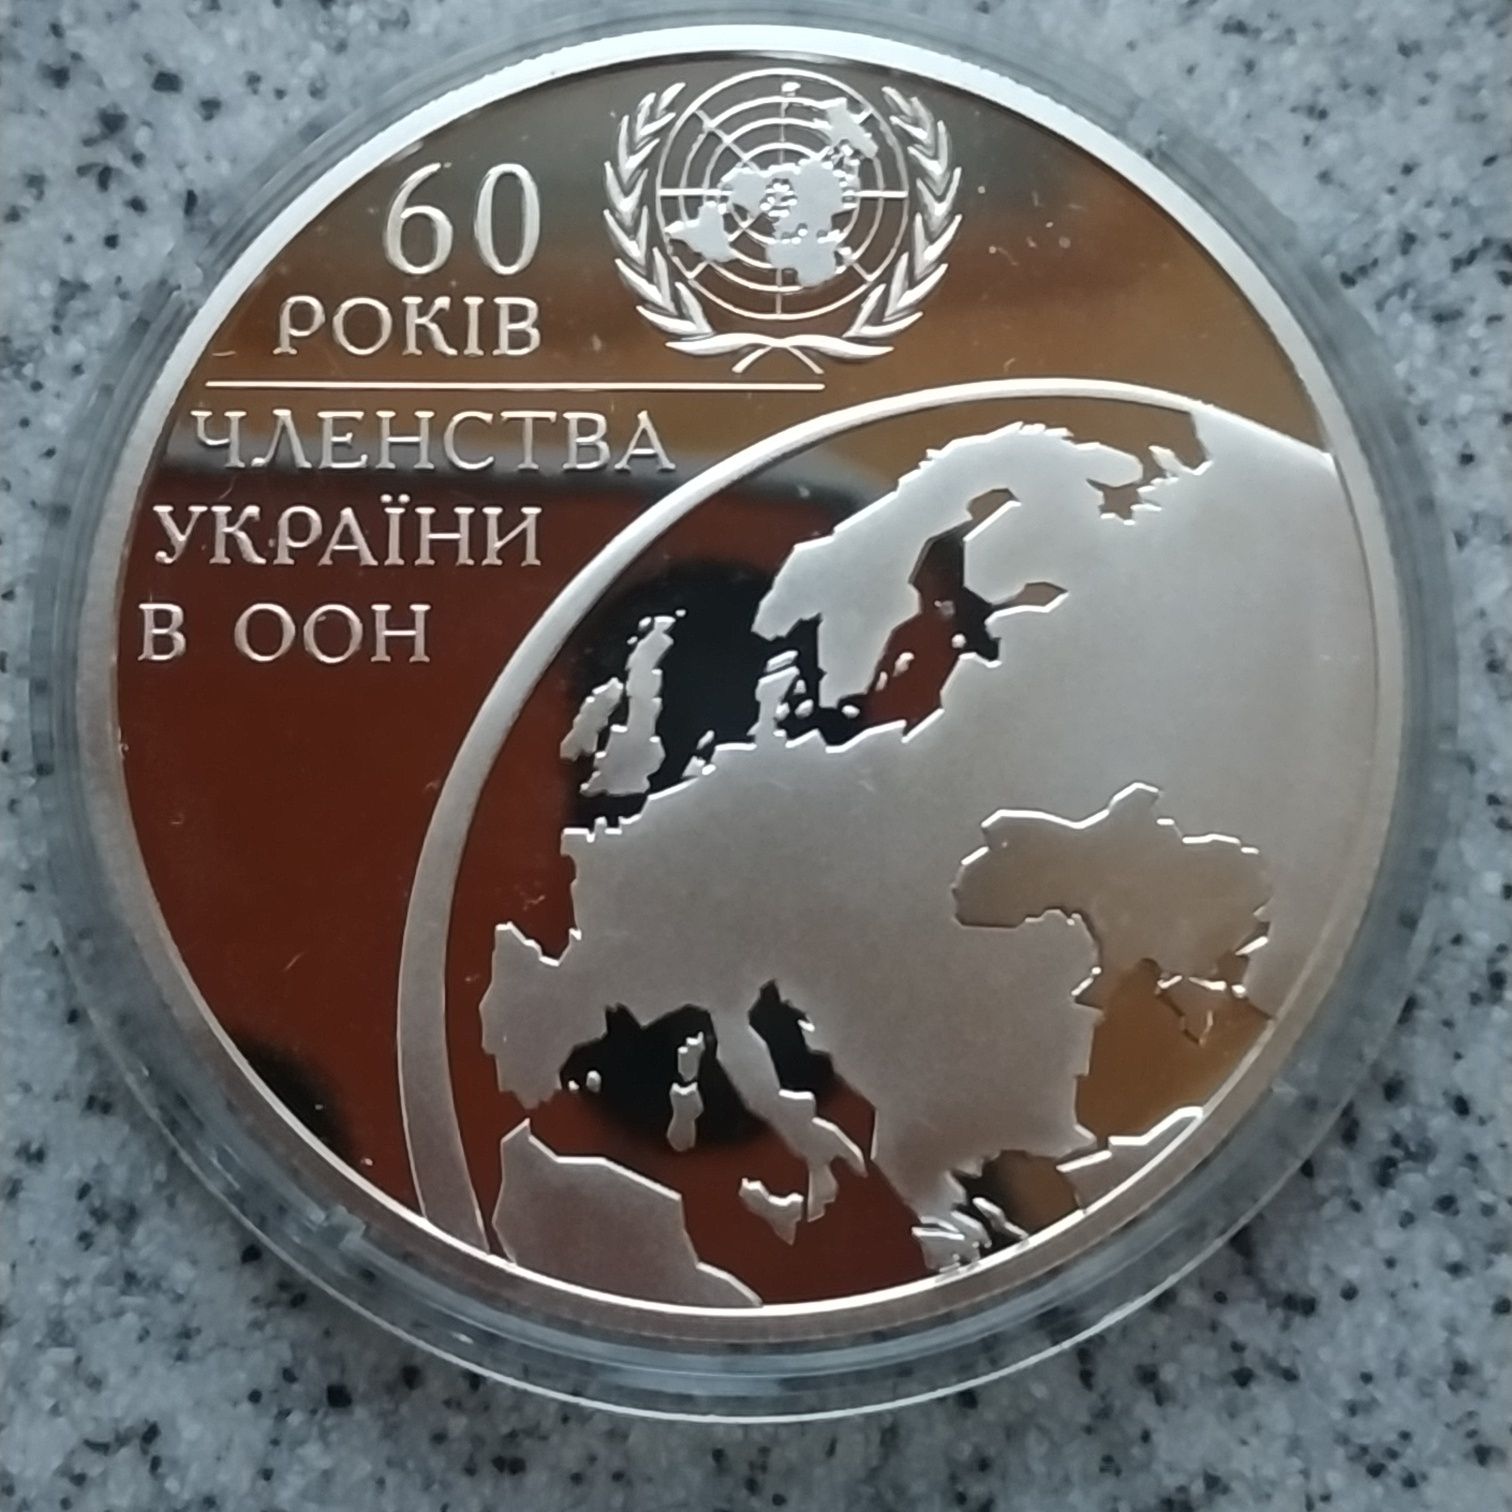 Срібло 60 років членства України в ООН 10 гривень 2005 серебро